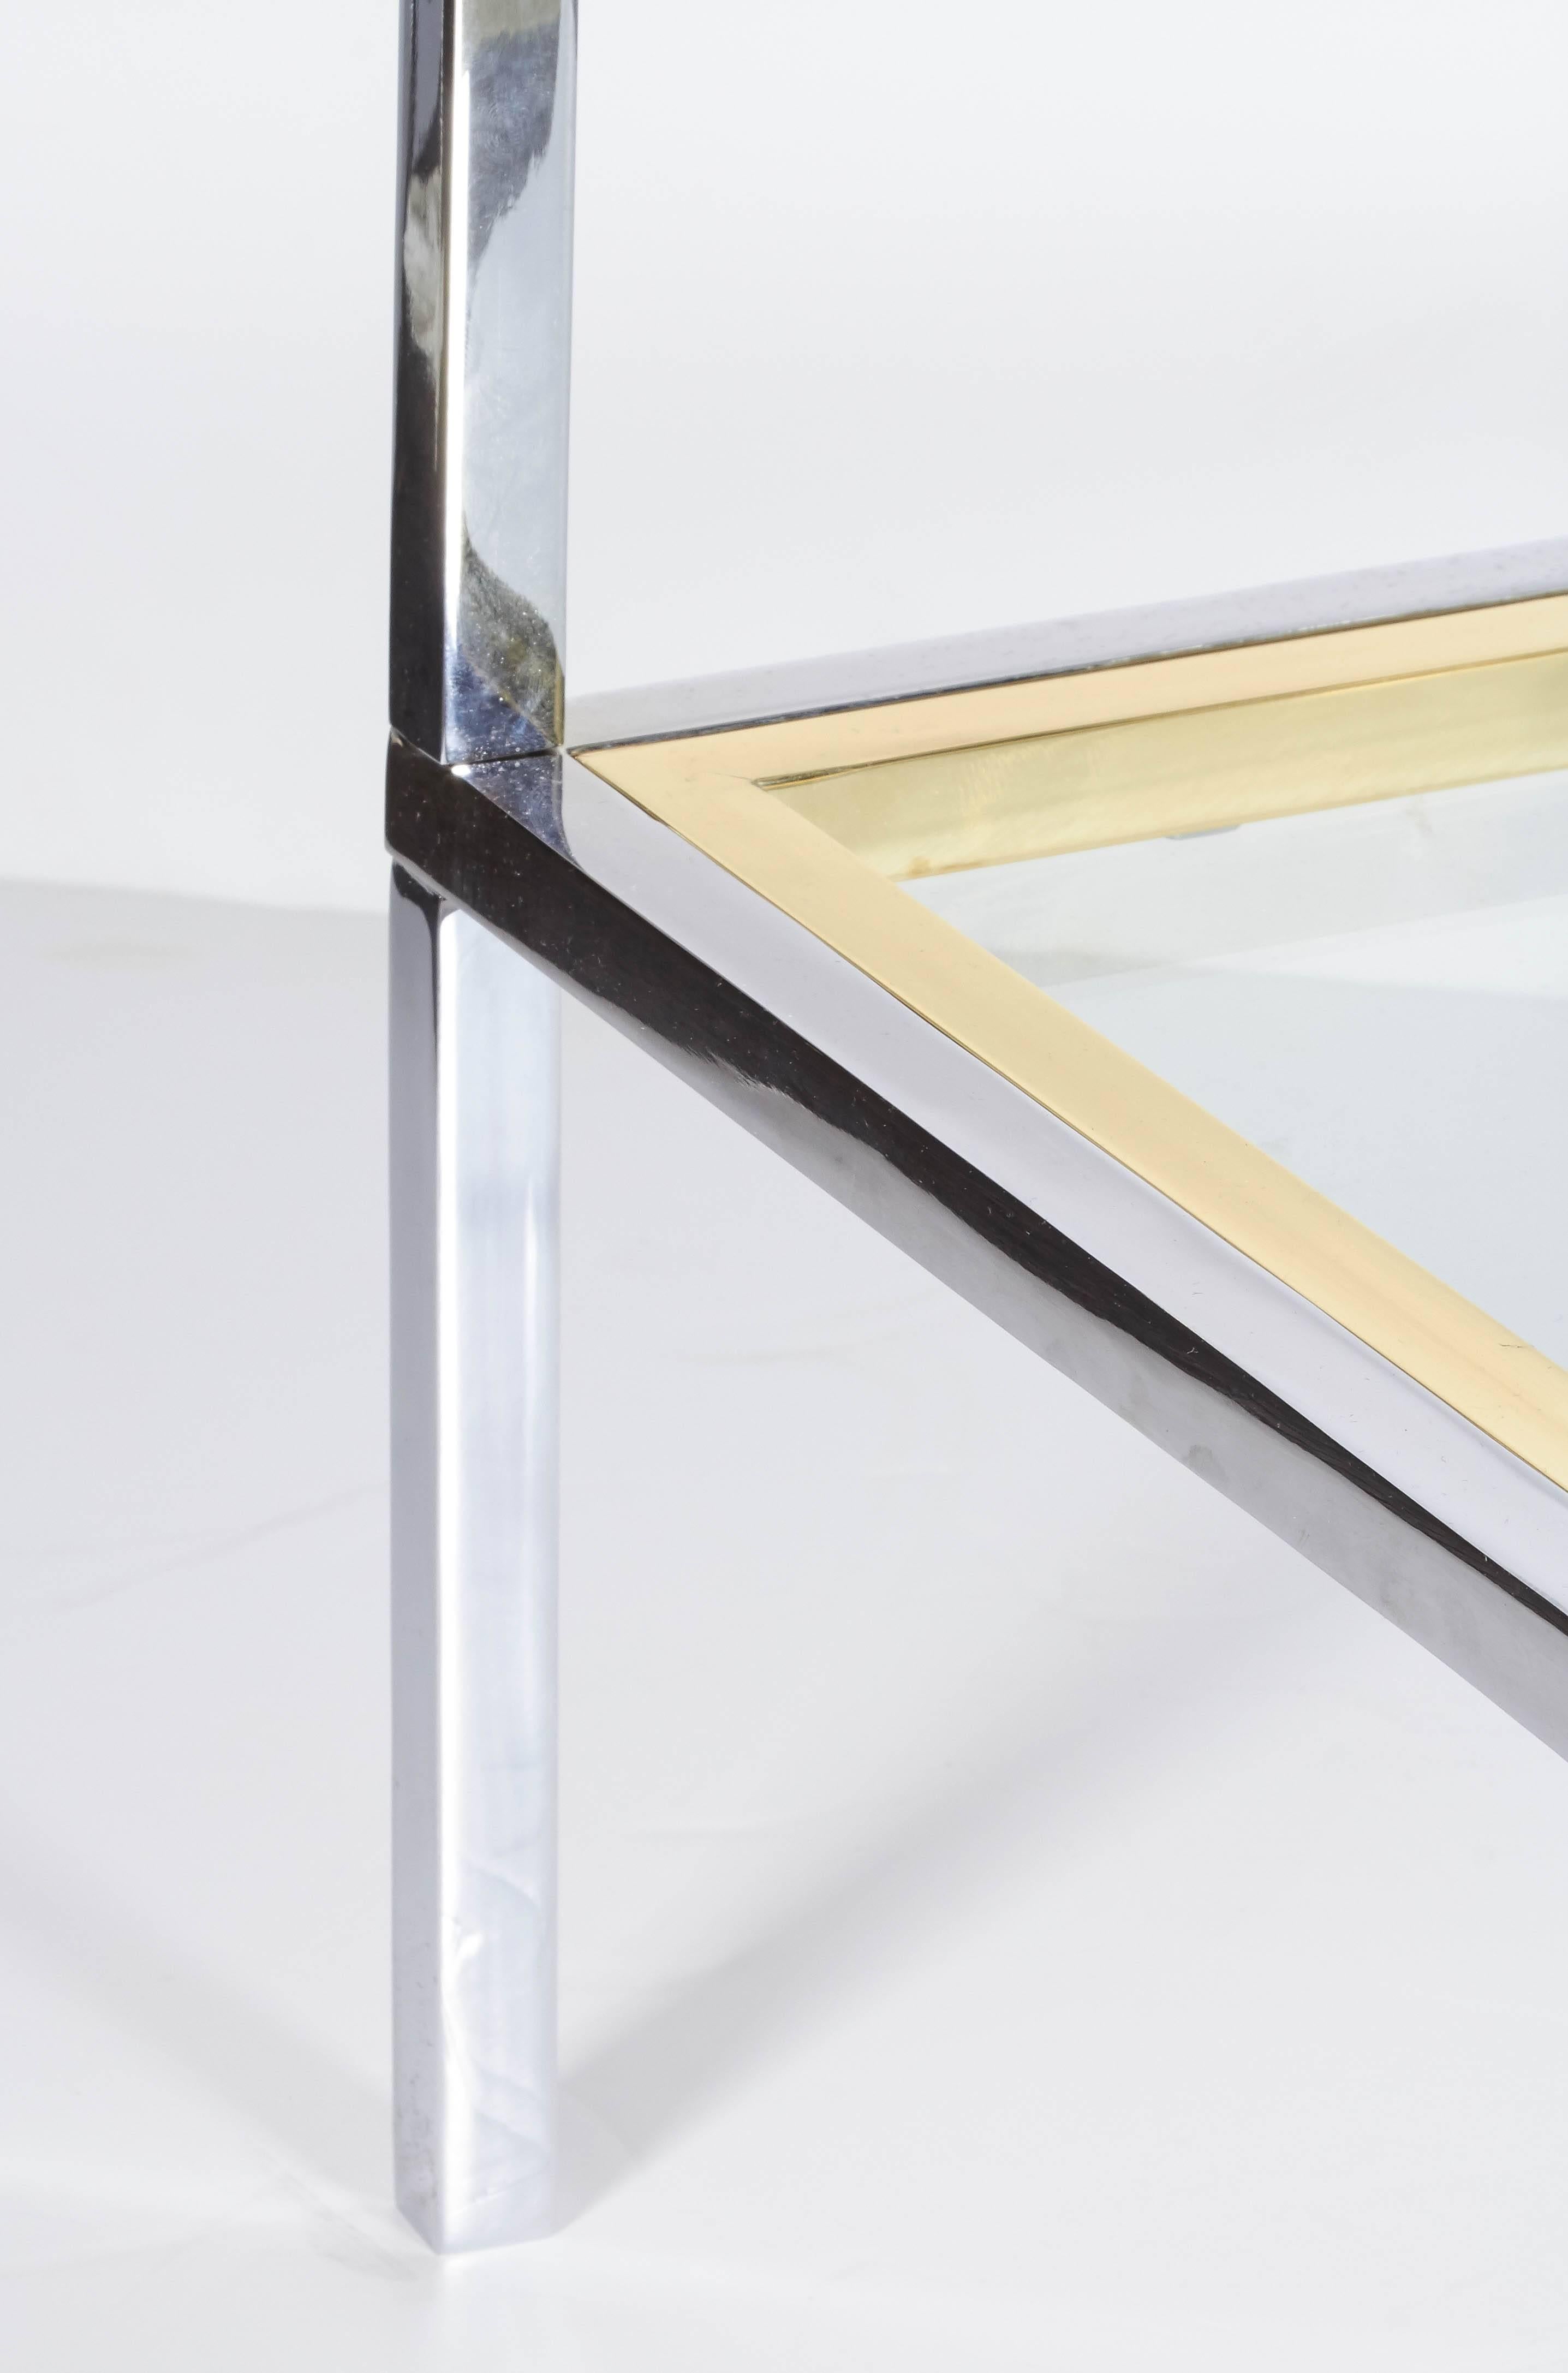 Dieser elegante und schlichte italienische Rechtecktisch aus den 1970er Jahren hat eine abnehmbare Tischplatte. Der Rahmen ist verchromt mit Messingakzenten. Der untere Boden ist mit einem Glaseinsatz befestigt. Die Tischplatte ist mit einem